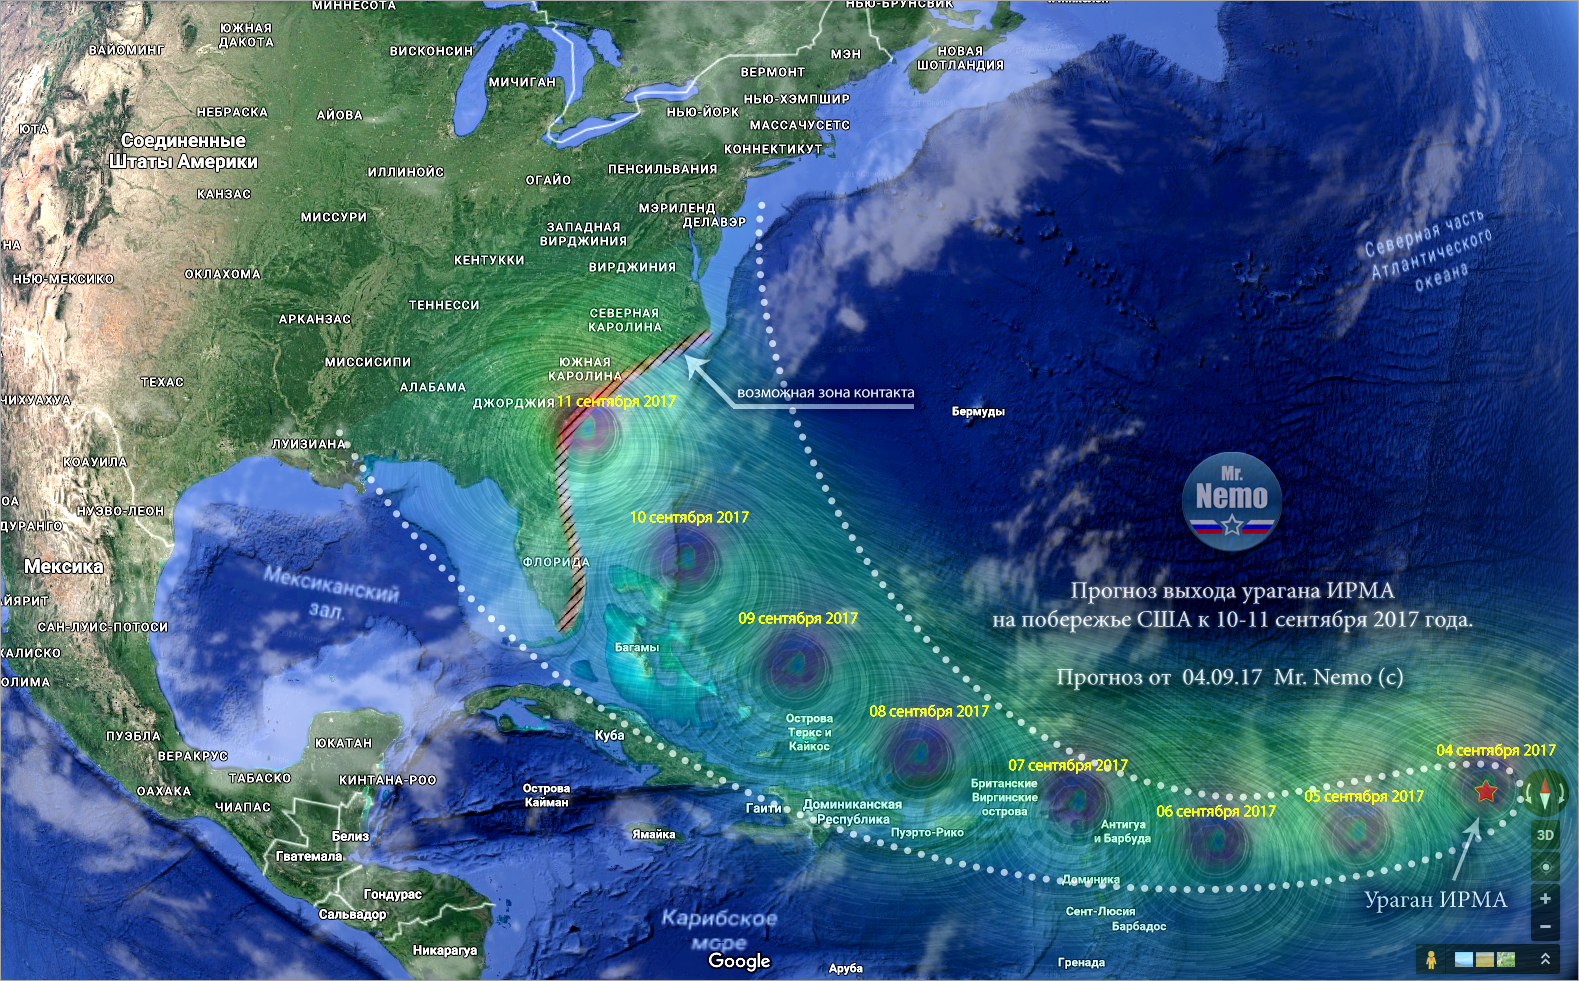 Прогноз расчетной траектории выхода сокрушительного урагана Ирма на восточное побережье США к 10-11 сентября 2017 года